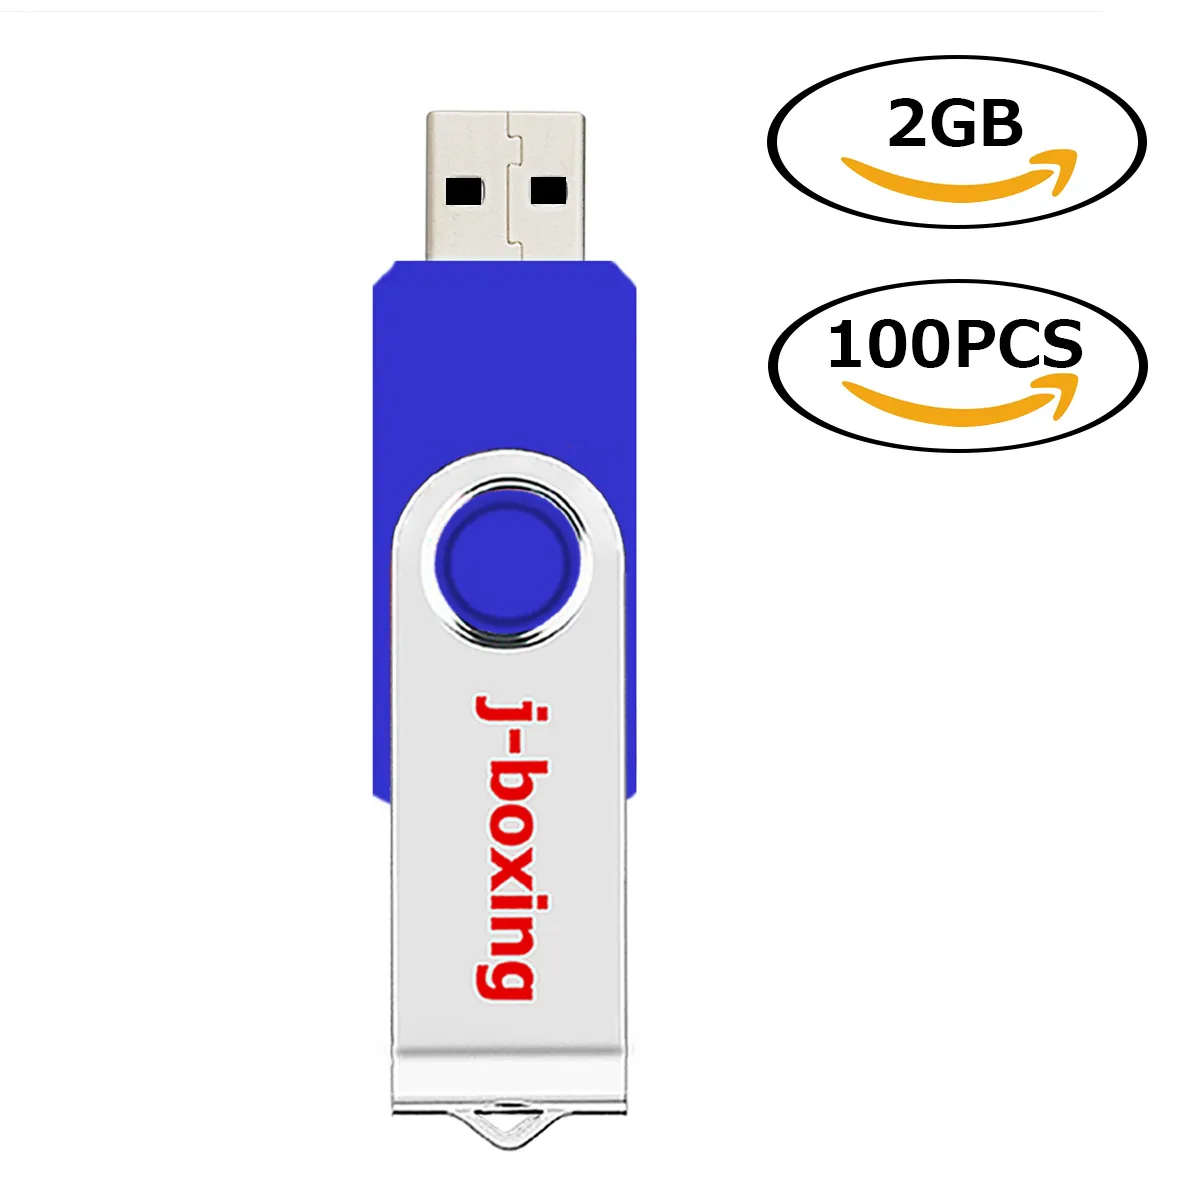 Toptan 100 PCS 2GB USB Flash Tahrikler PC Dizüstü Bilgisayar Tablet Kalem Kalemi Başparmak Depolama 10 Renk Ücretsiz Nakliye